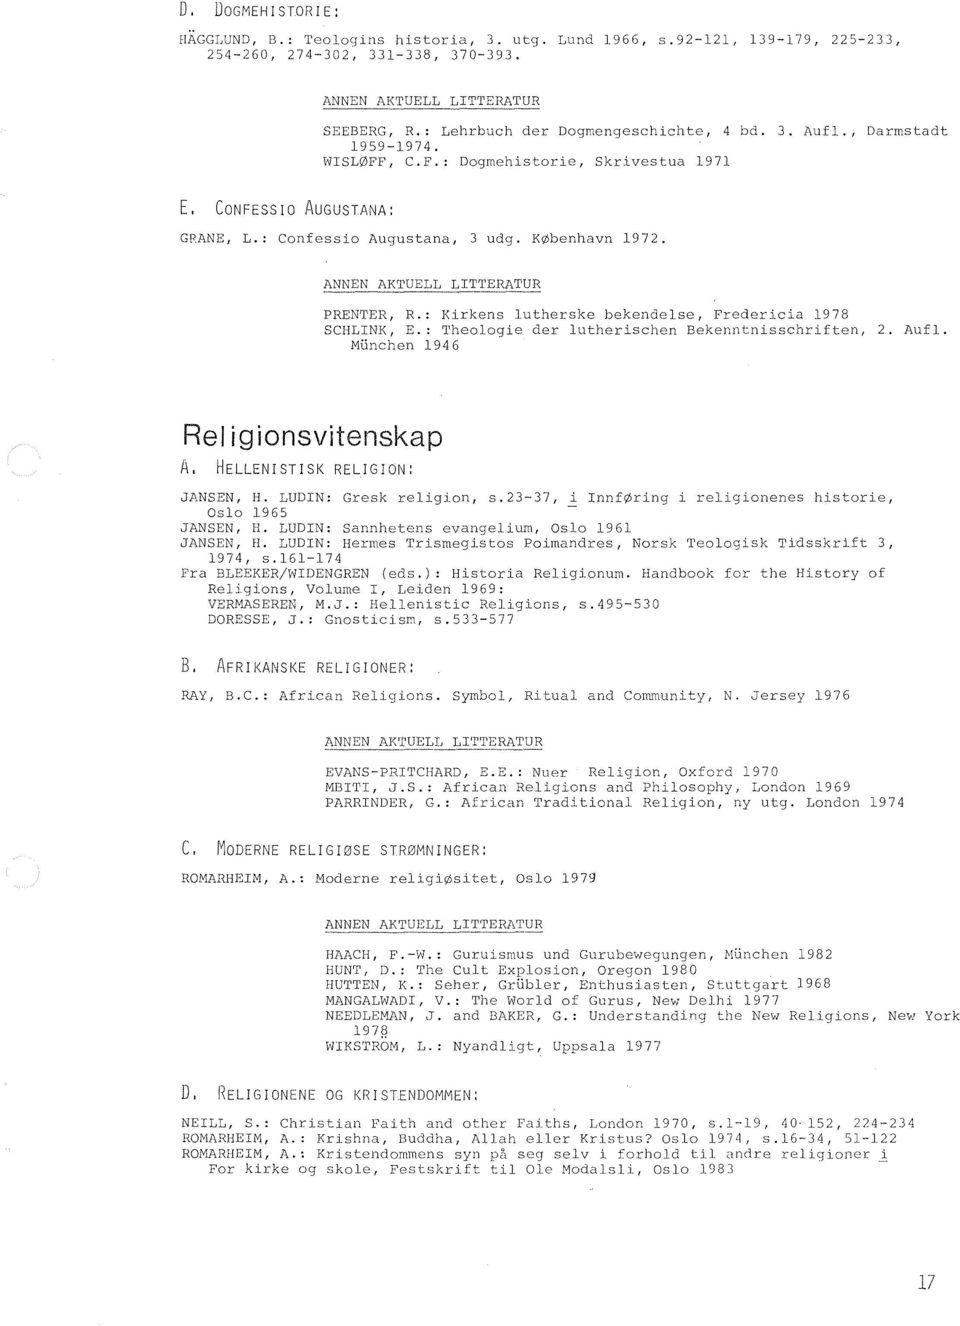 : Kirkens lutherske bekendelse, Fredericia 1978 SCHLINK, E.: Theologie der lutherischen Bekenntnisschriften, 2. Aufl. Munchen 1946 Rei igionsvitenskap A, HELLENISTISK RELIGION: JANSEN, H.